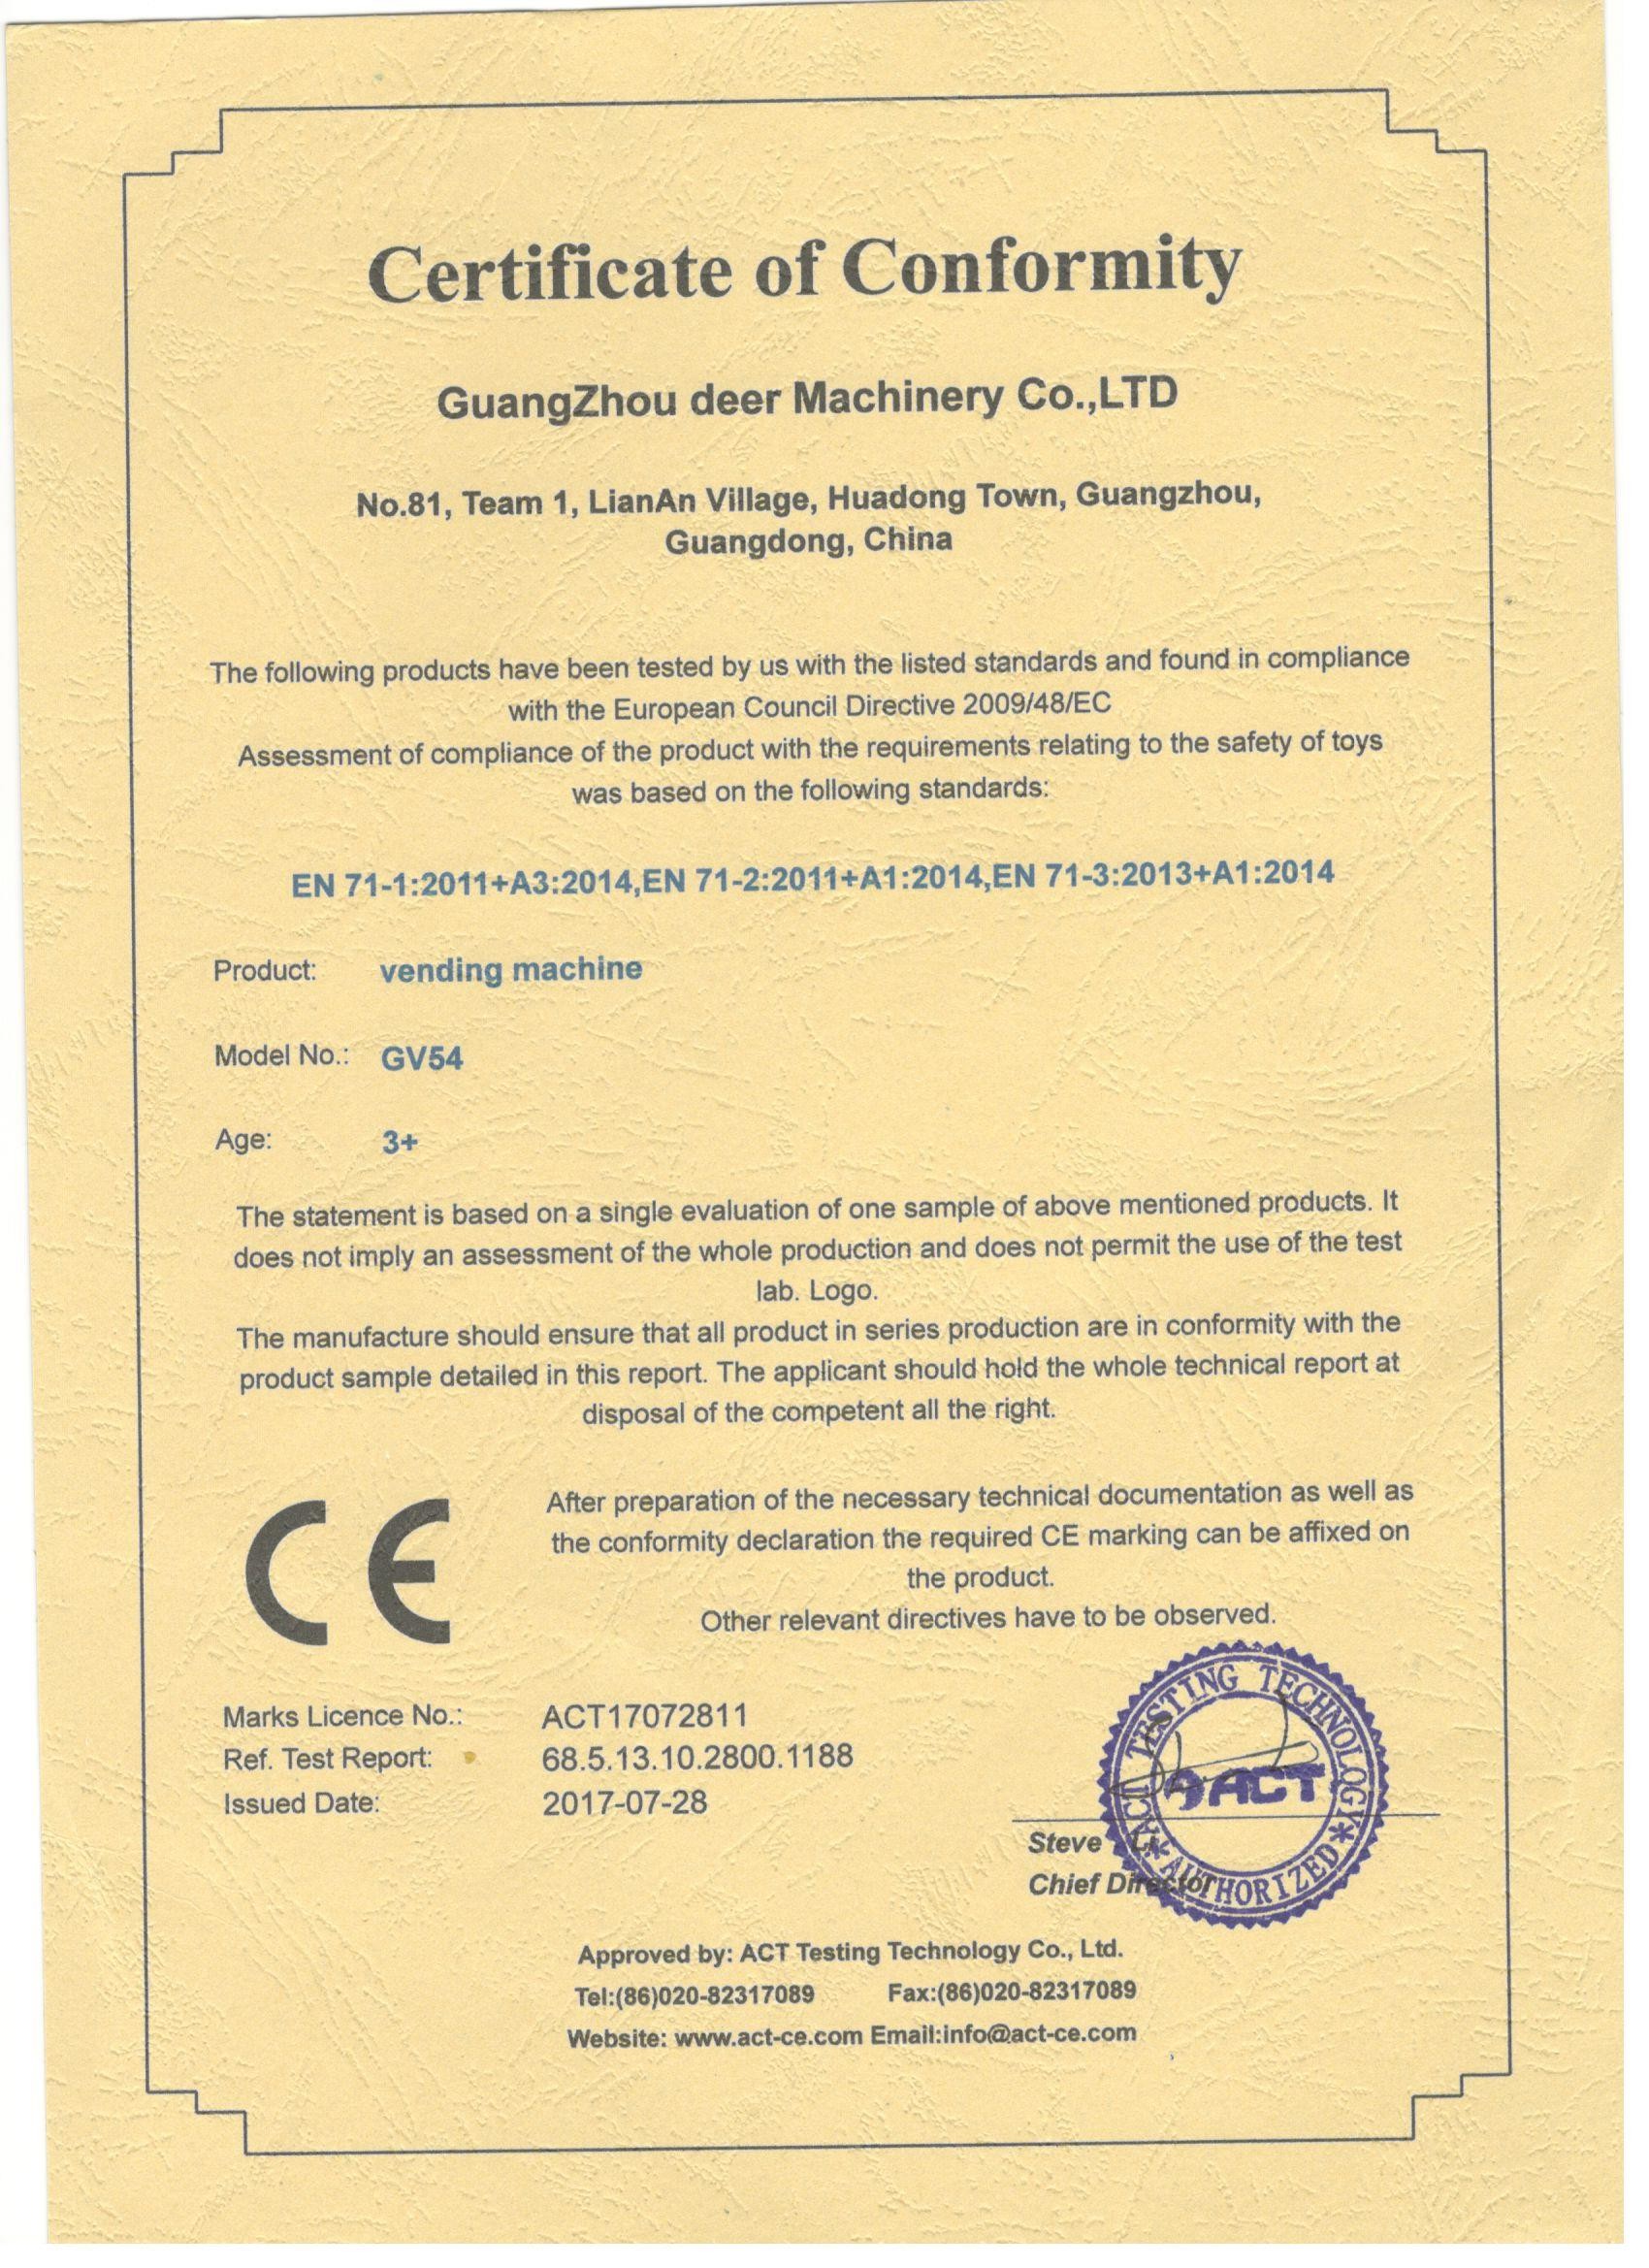 중국 Guangzhou Deer Machinery Co., Ltd. 인증